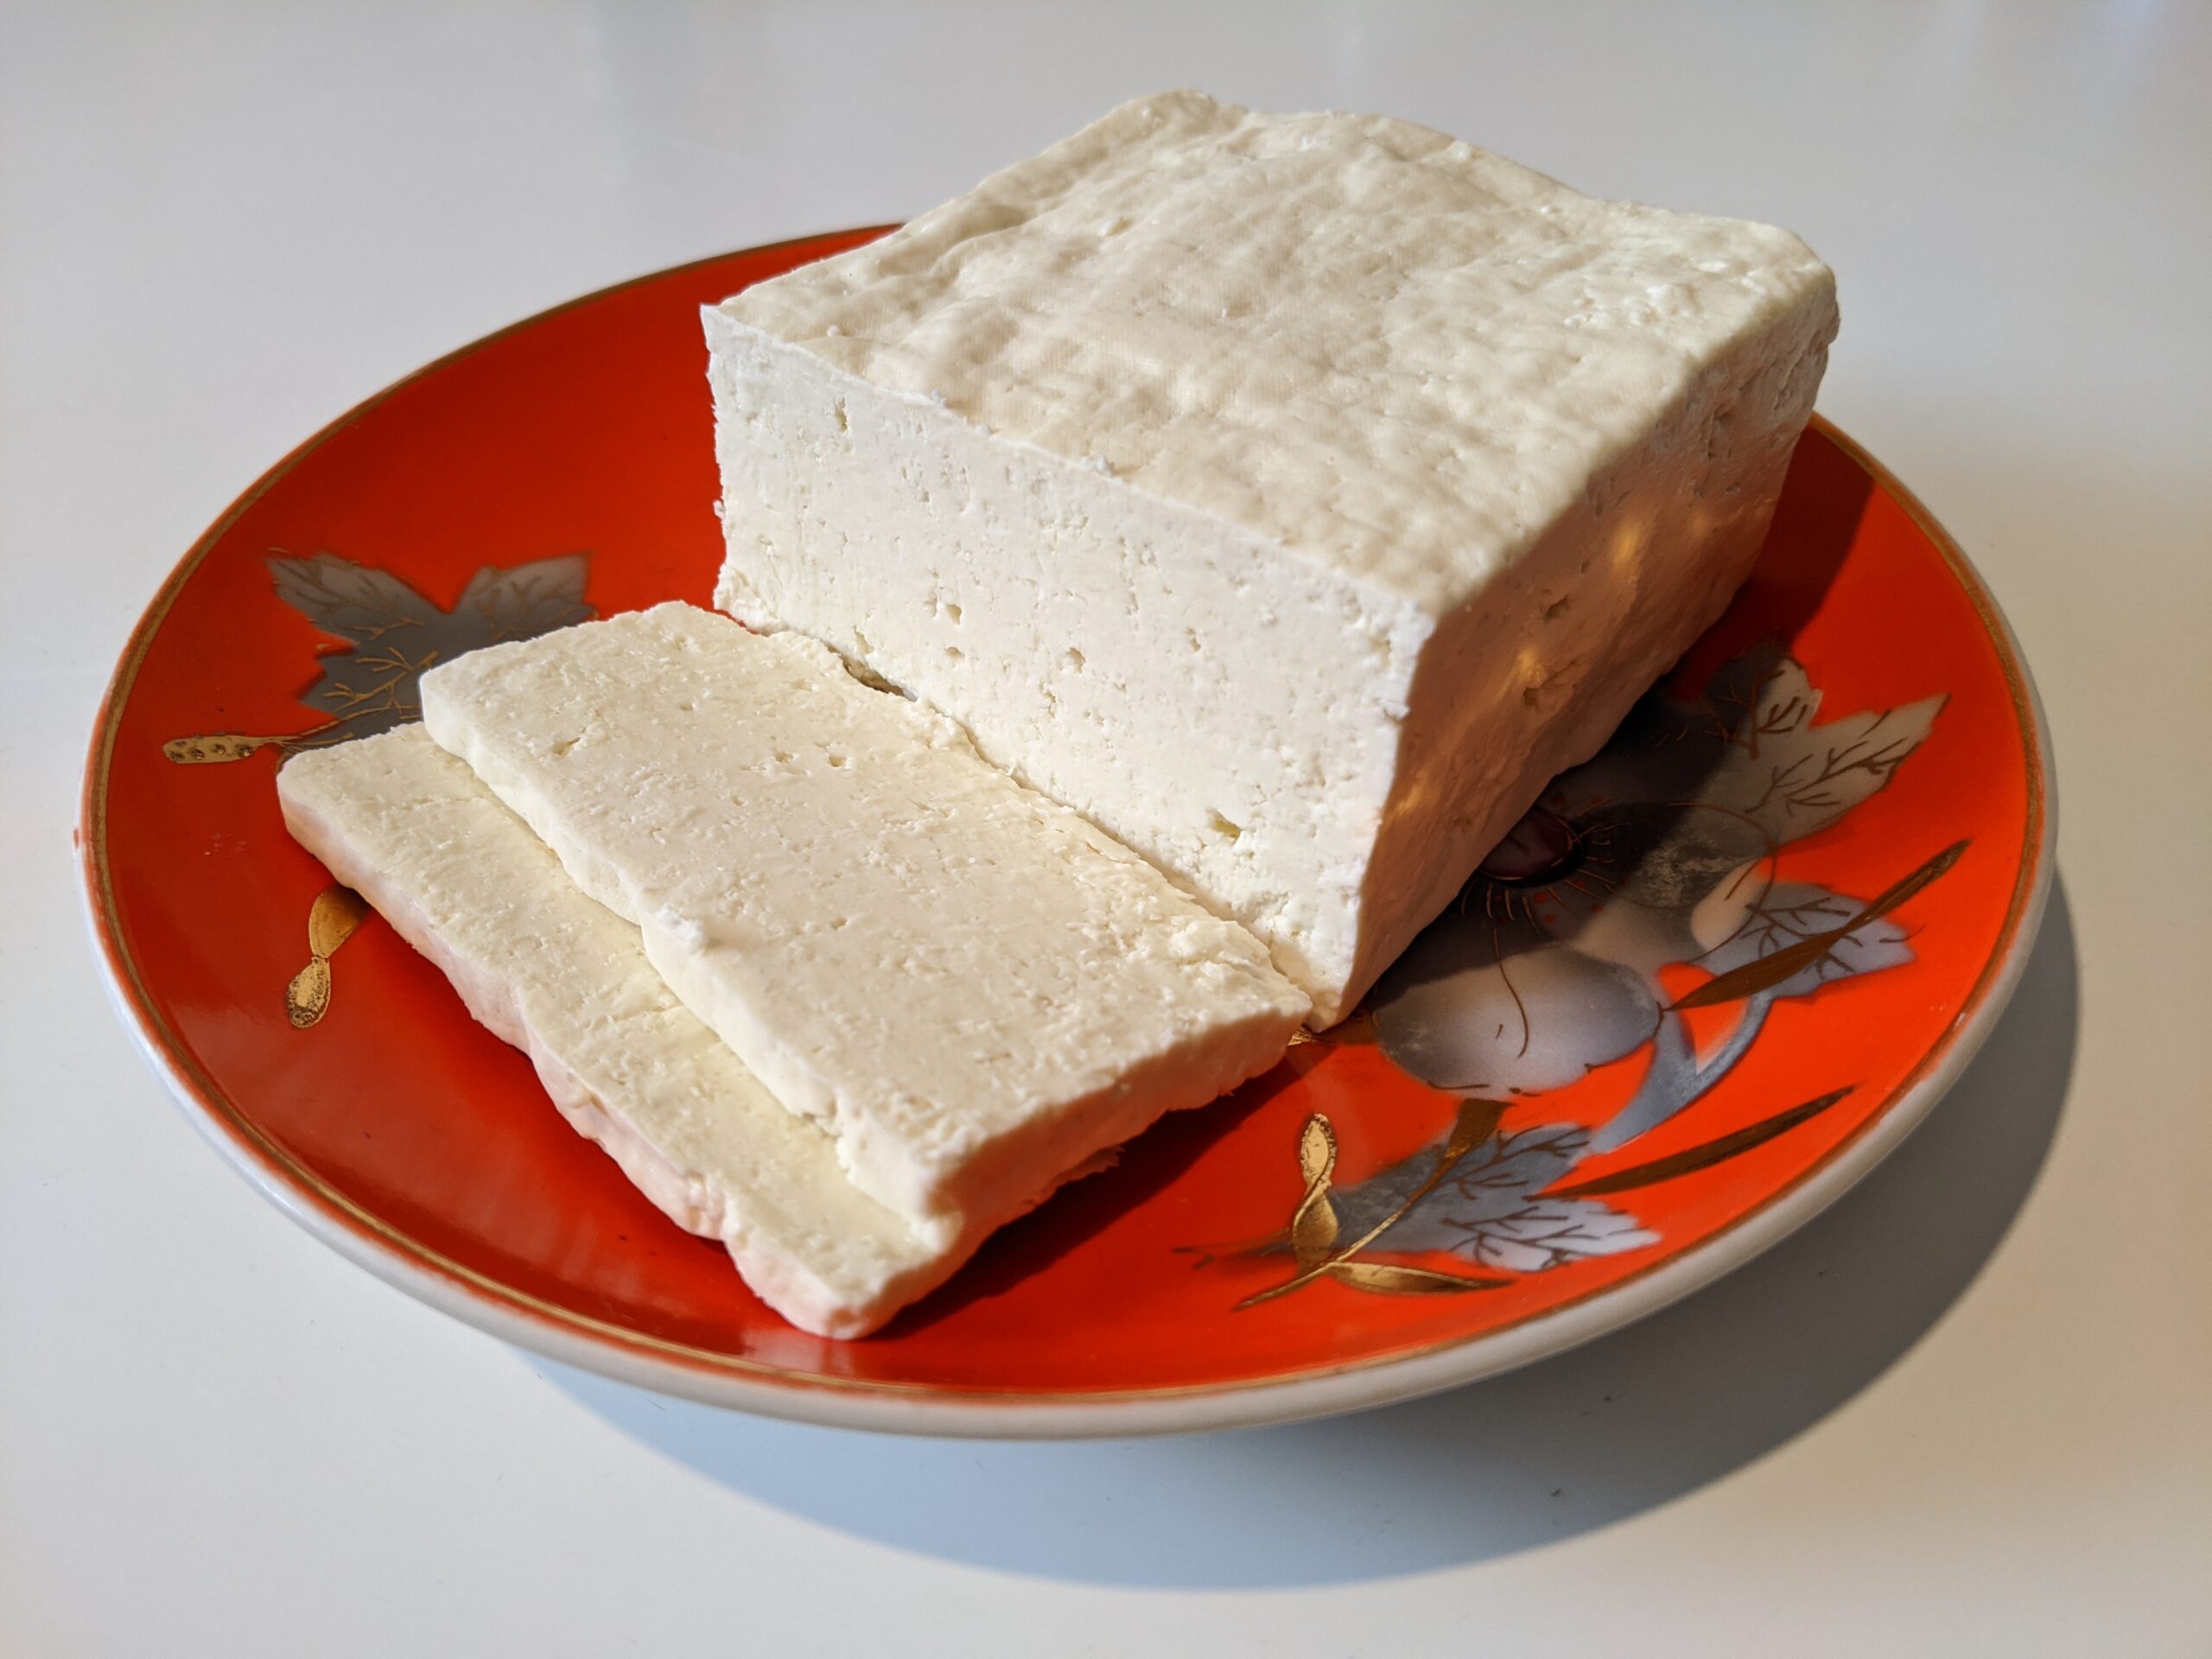 양젖을 유익하게 활용하는 방법, 양유로 만든 치즈